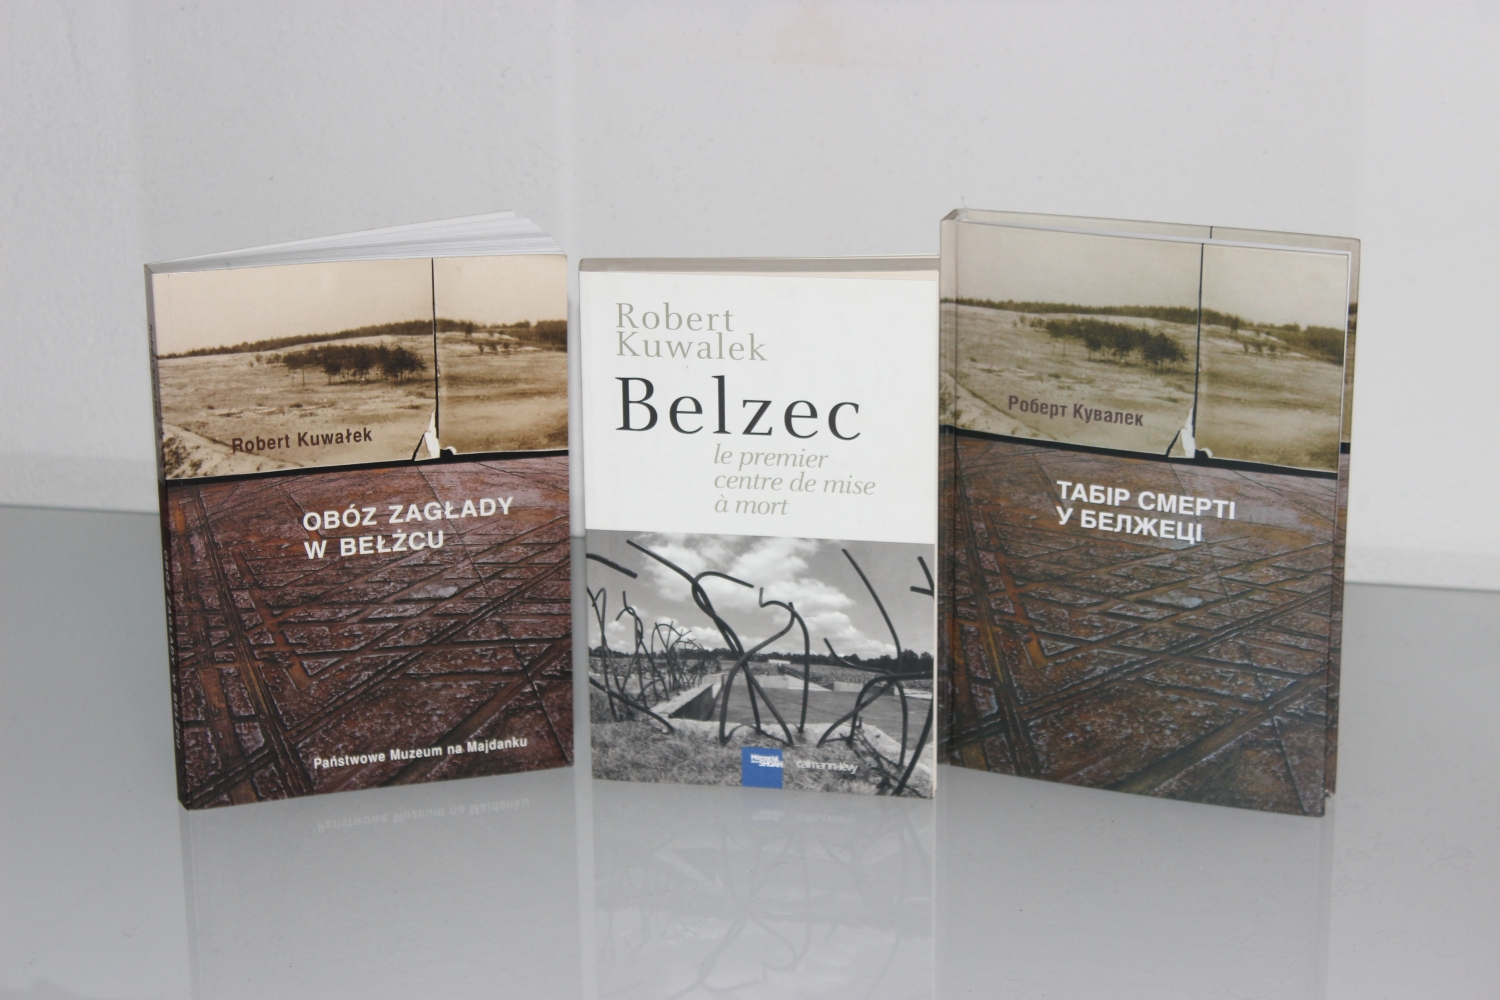 Okładki książki Roberta Kuwałka "Obóz zagłady w Bełżcu"